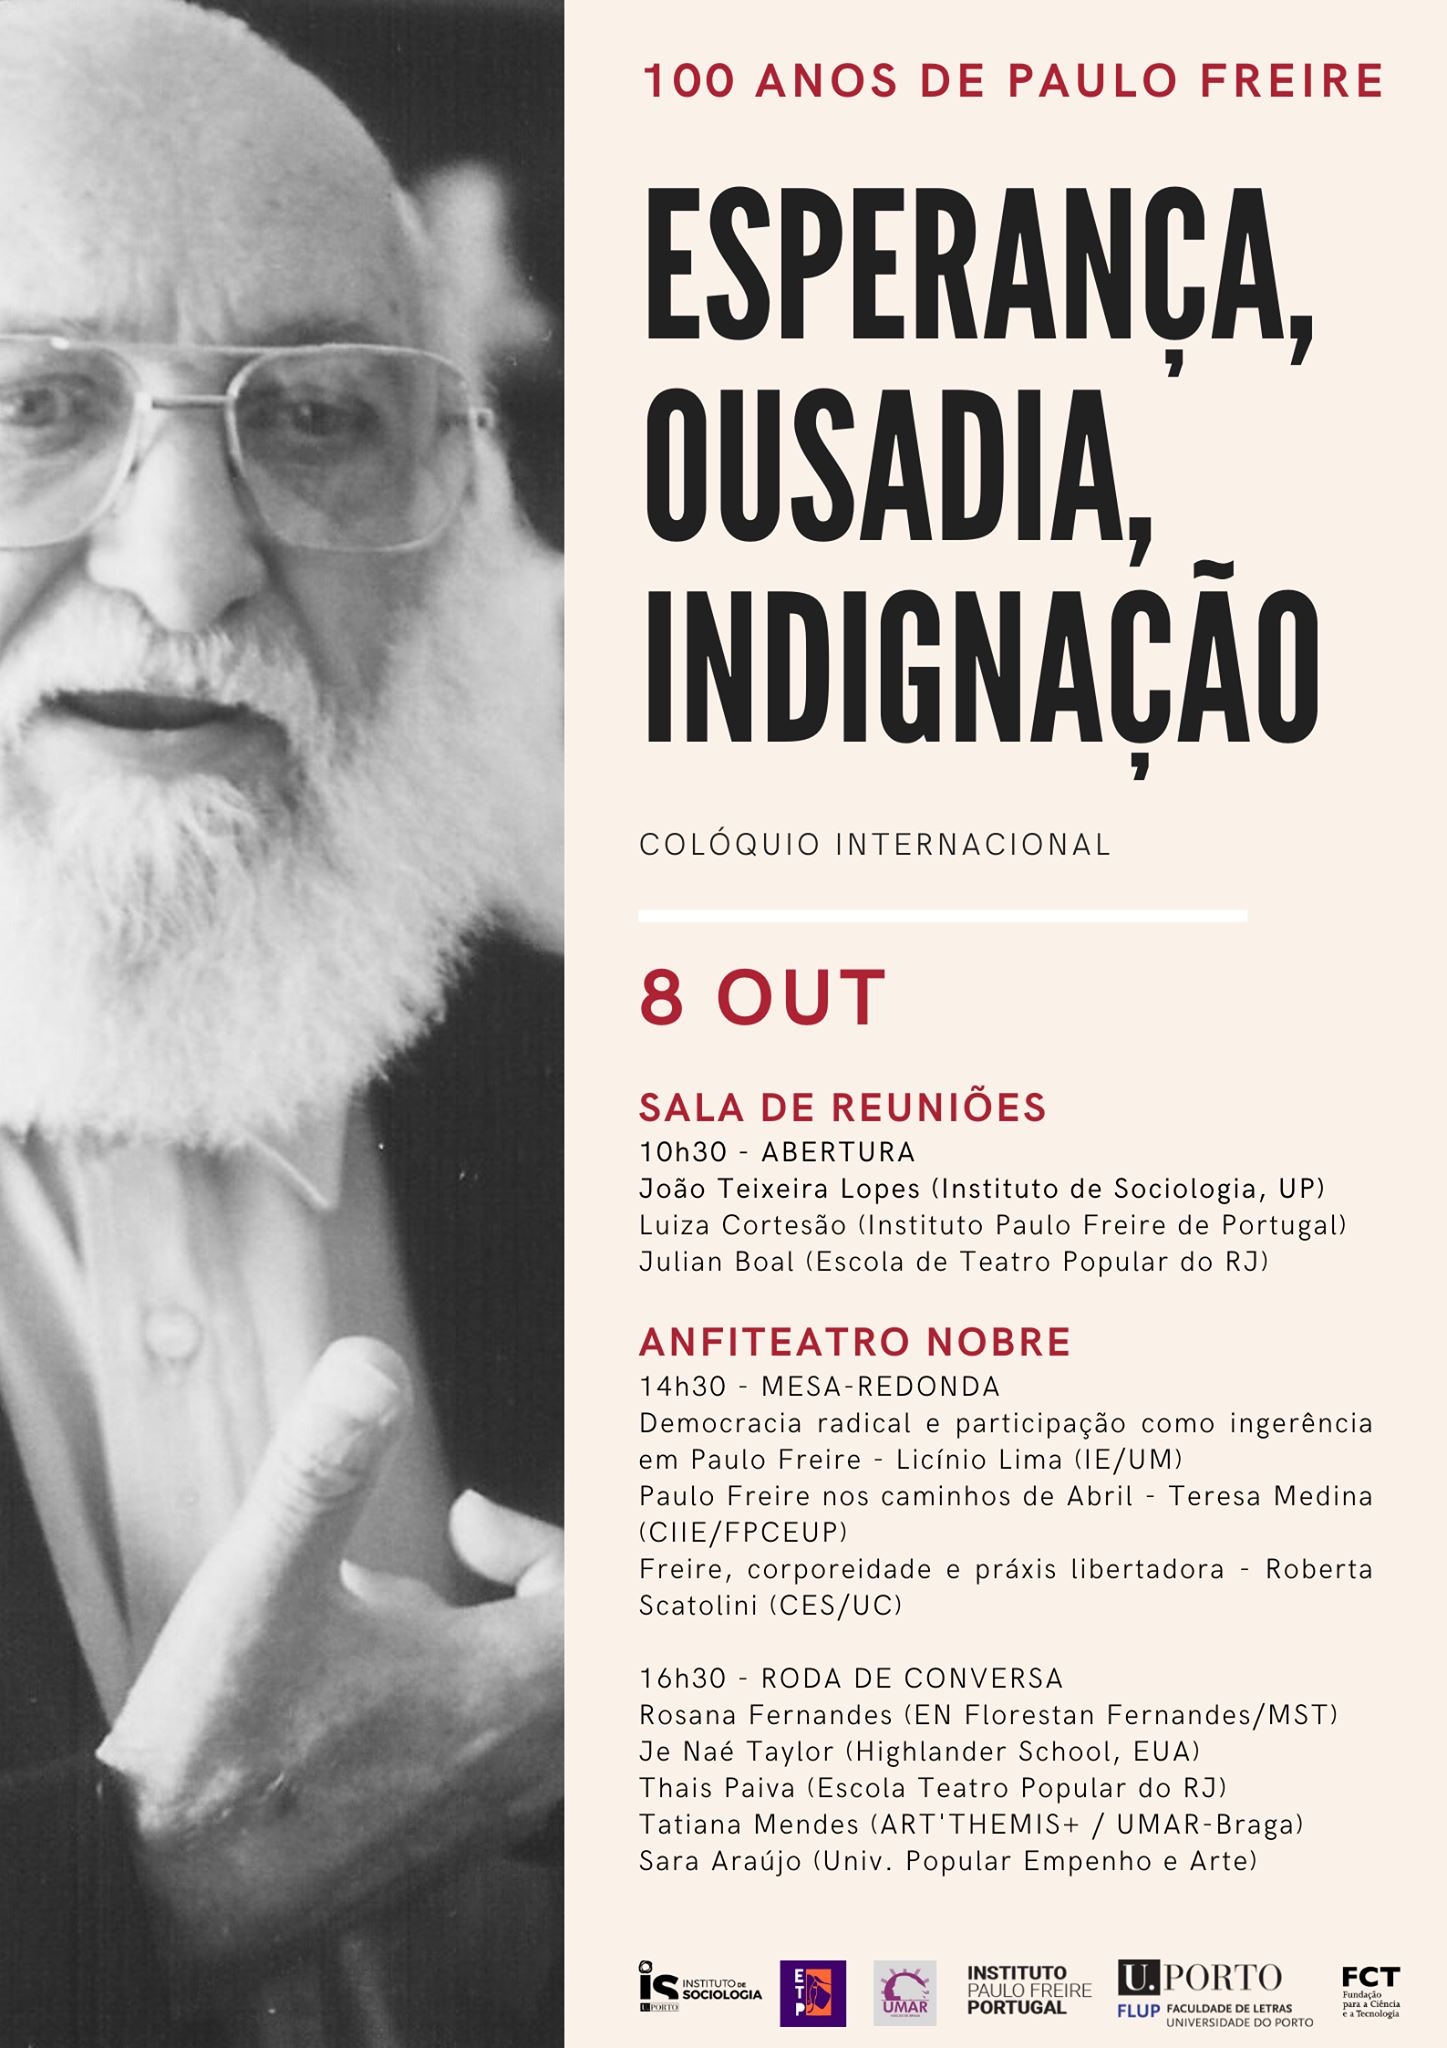 100 anos de Paulo Freire: Esperança, Ousadia, Indignação